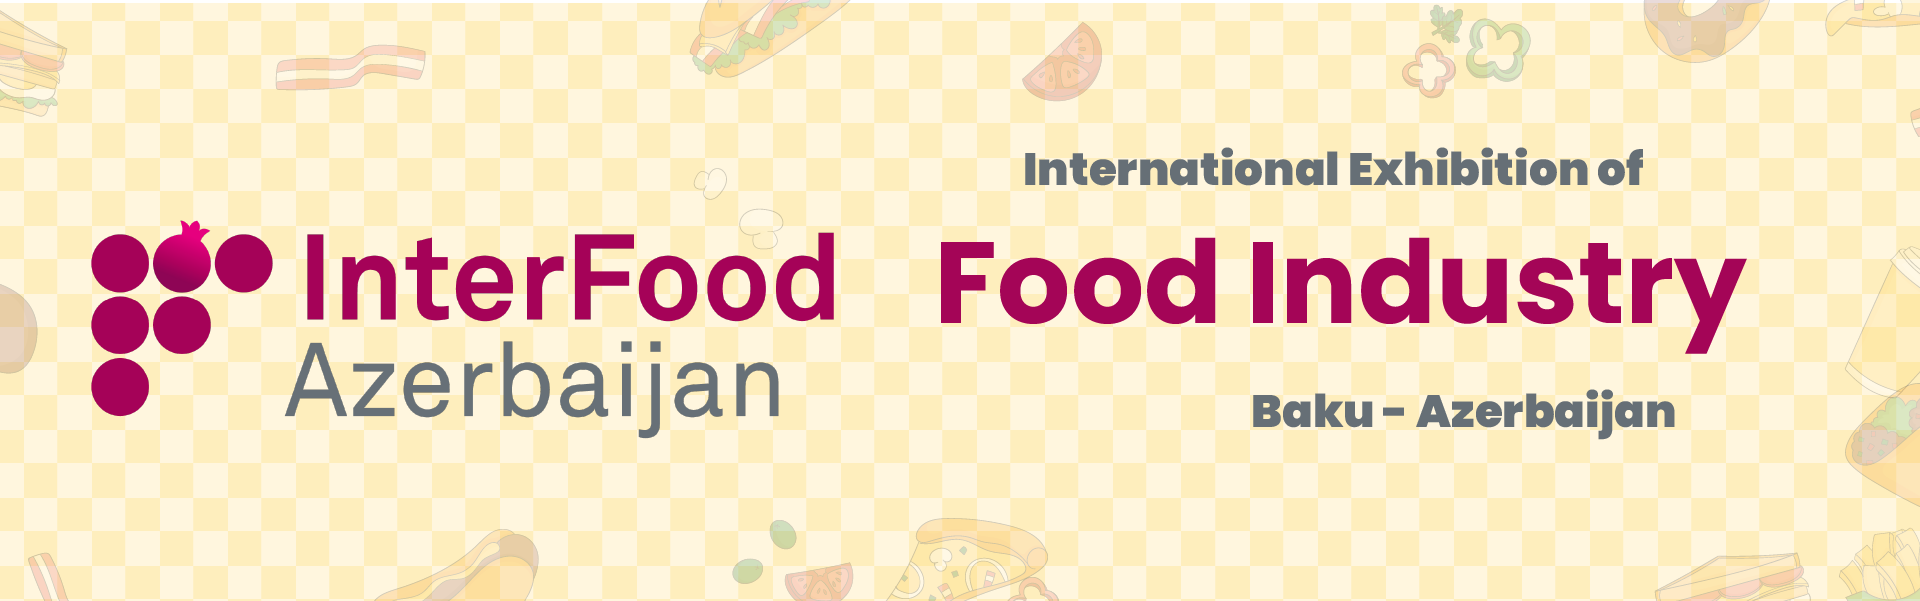 Food Industry (INTERFOOD Exhibition) Baku Azerbaijan